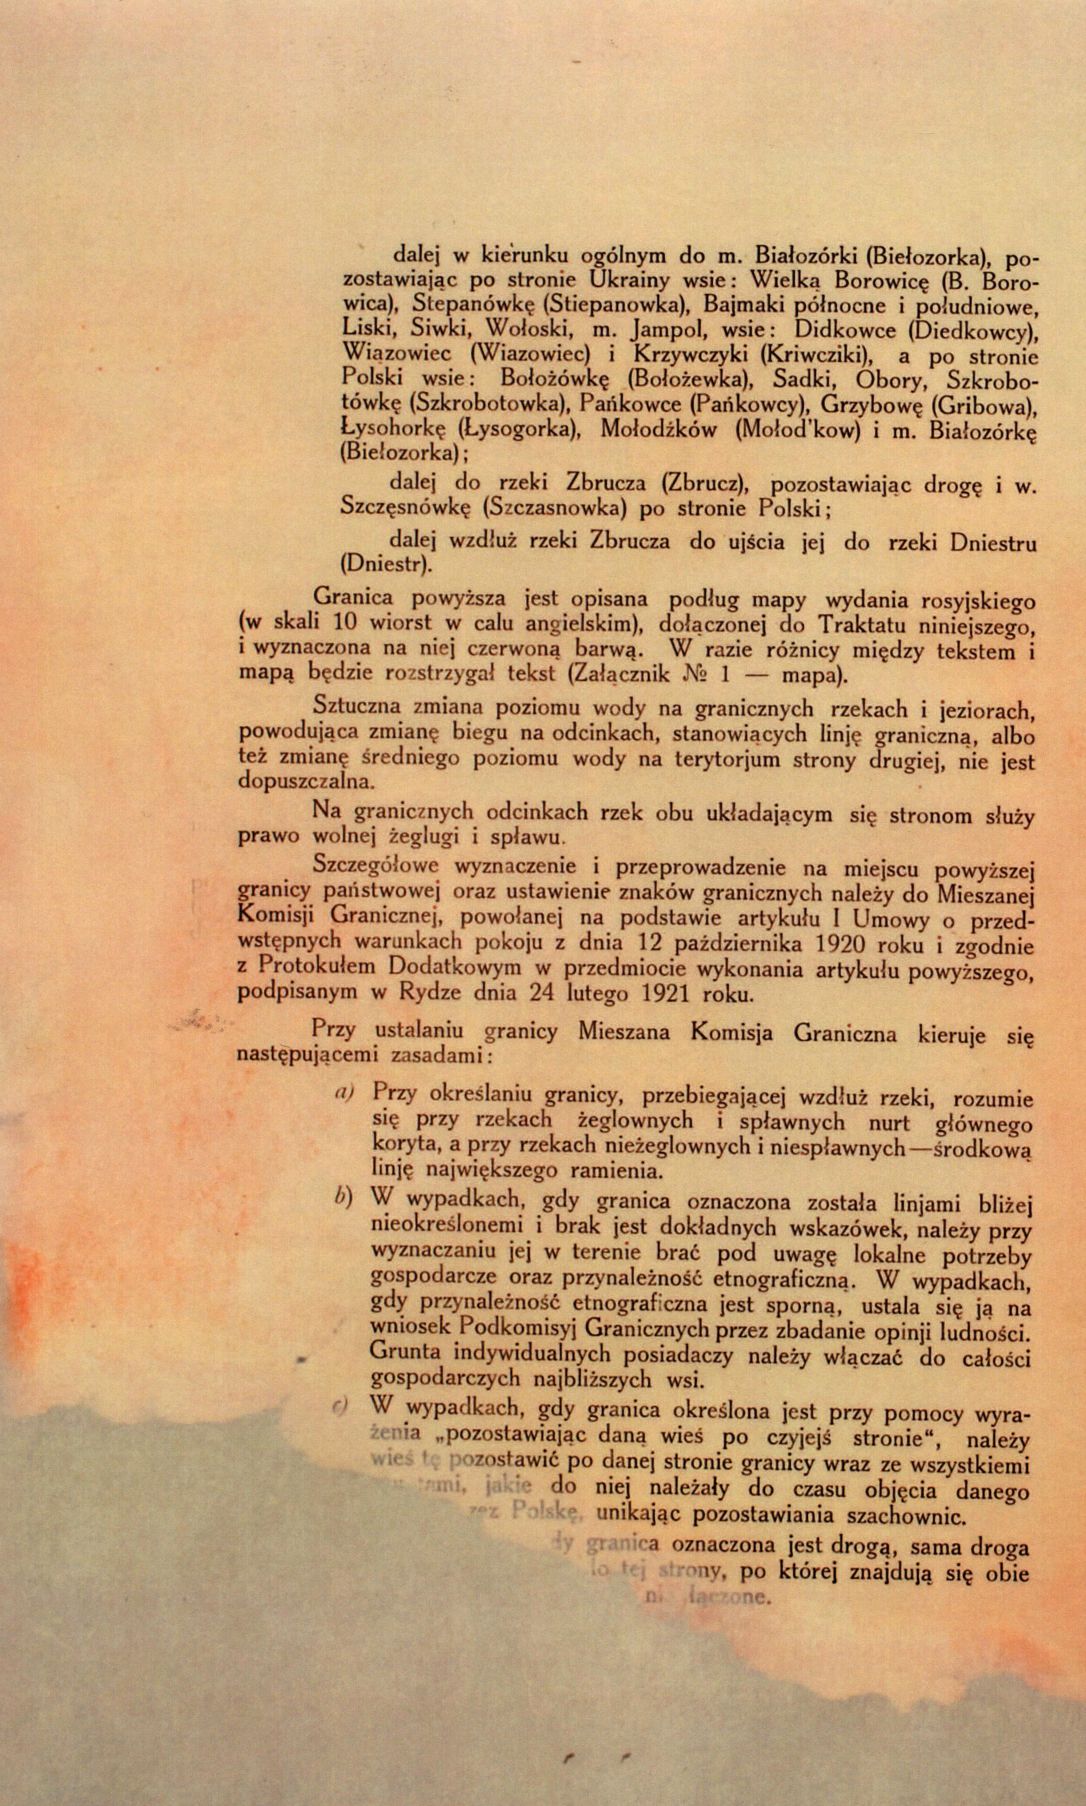 Traktat Pokoju między Polską a Rosją i Ukrainą podpisany w Rydze dnia 18 marca 1921 roku, s. 6, MSZ, sygn. 6739.